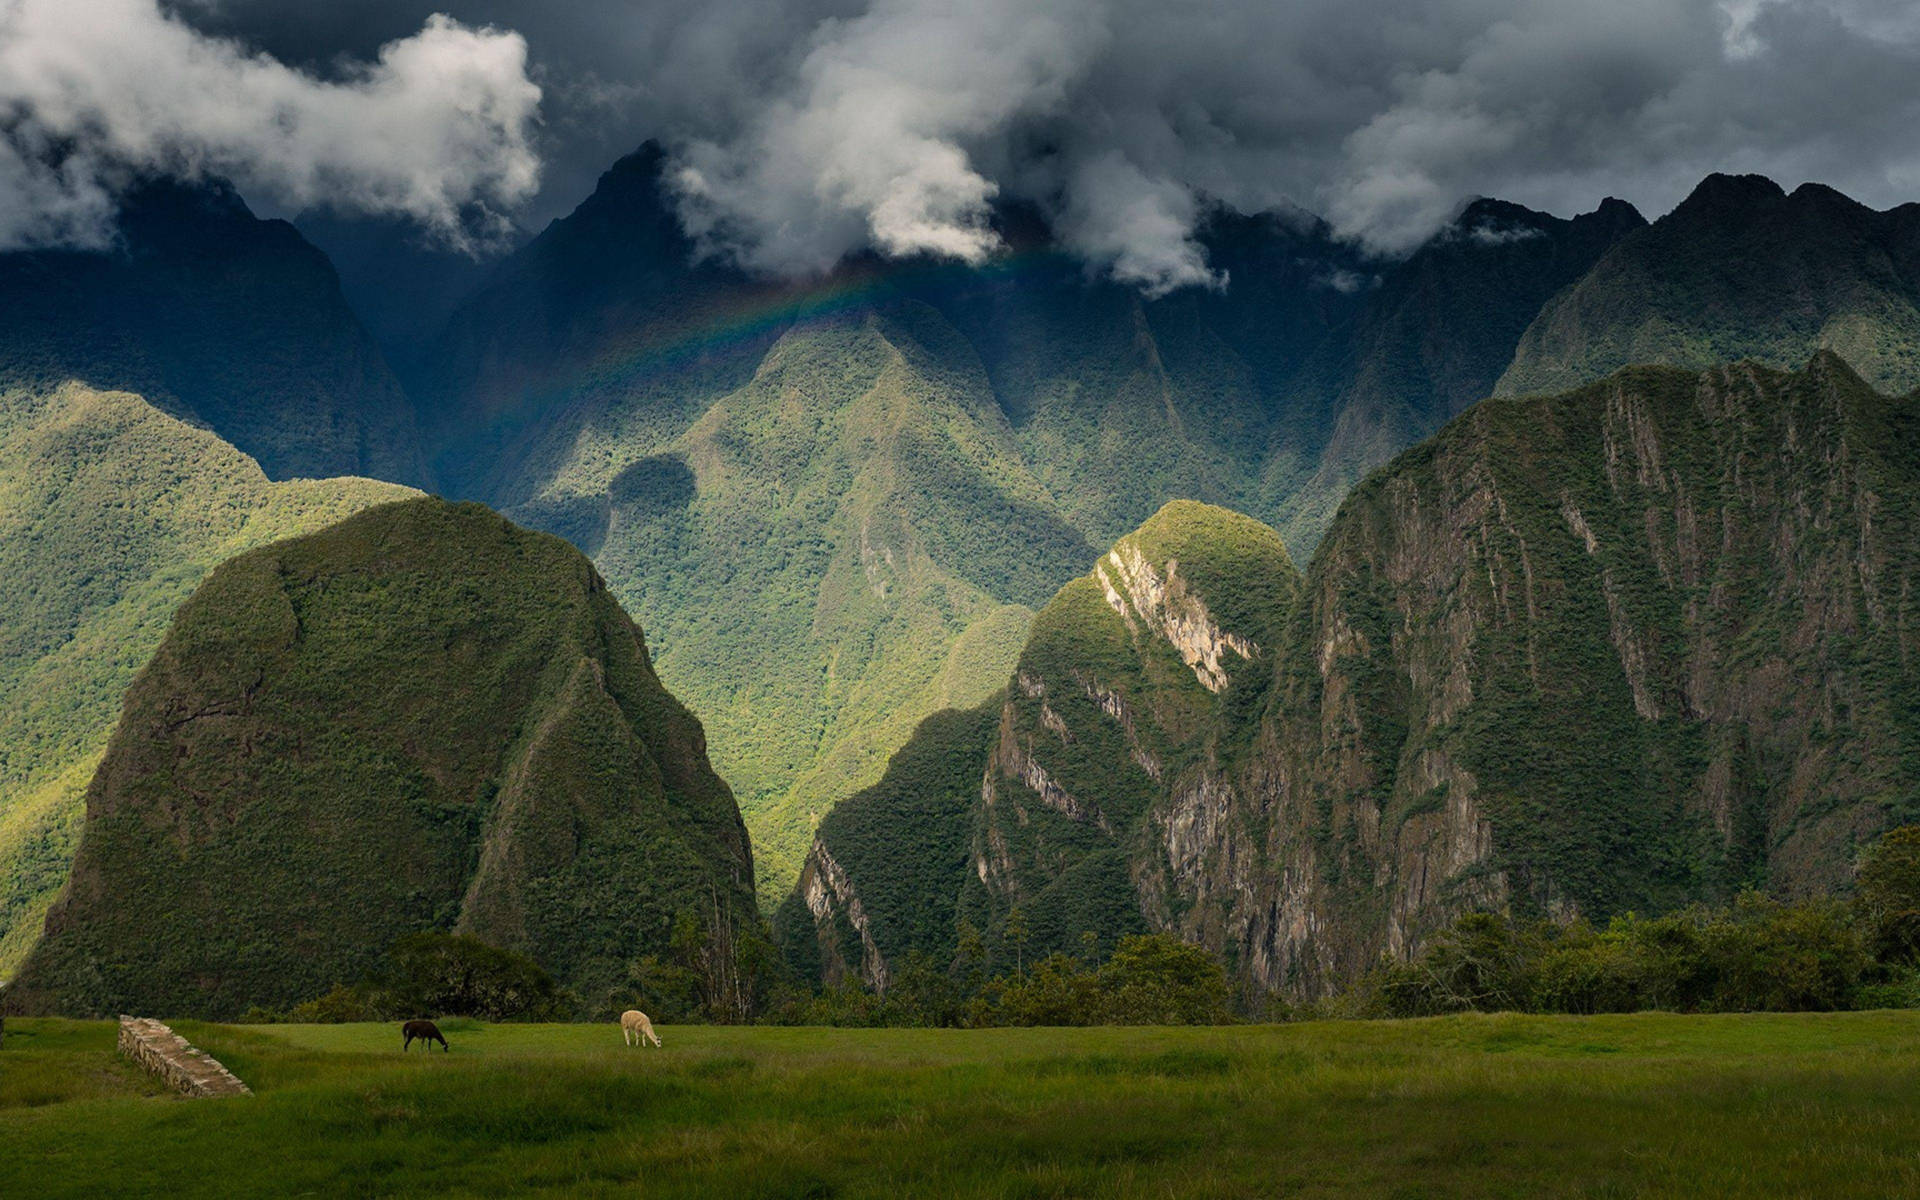 Væk et strålende udtryk med dette skarpe og farverige bjerglandskab af Machu Picchu-bjergene i Peru. Wallpaper